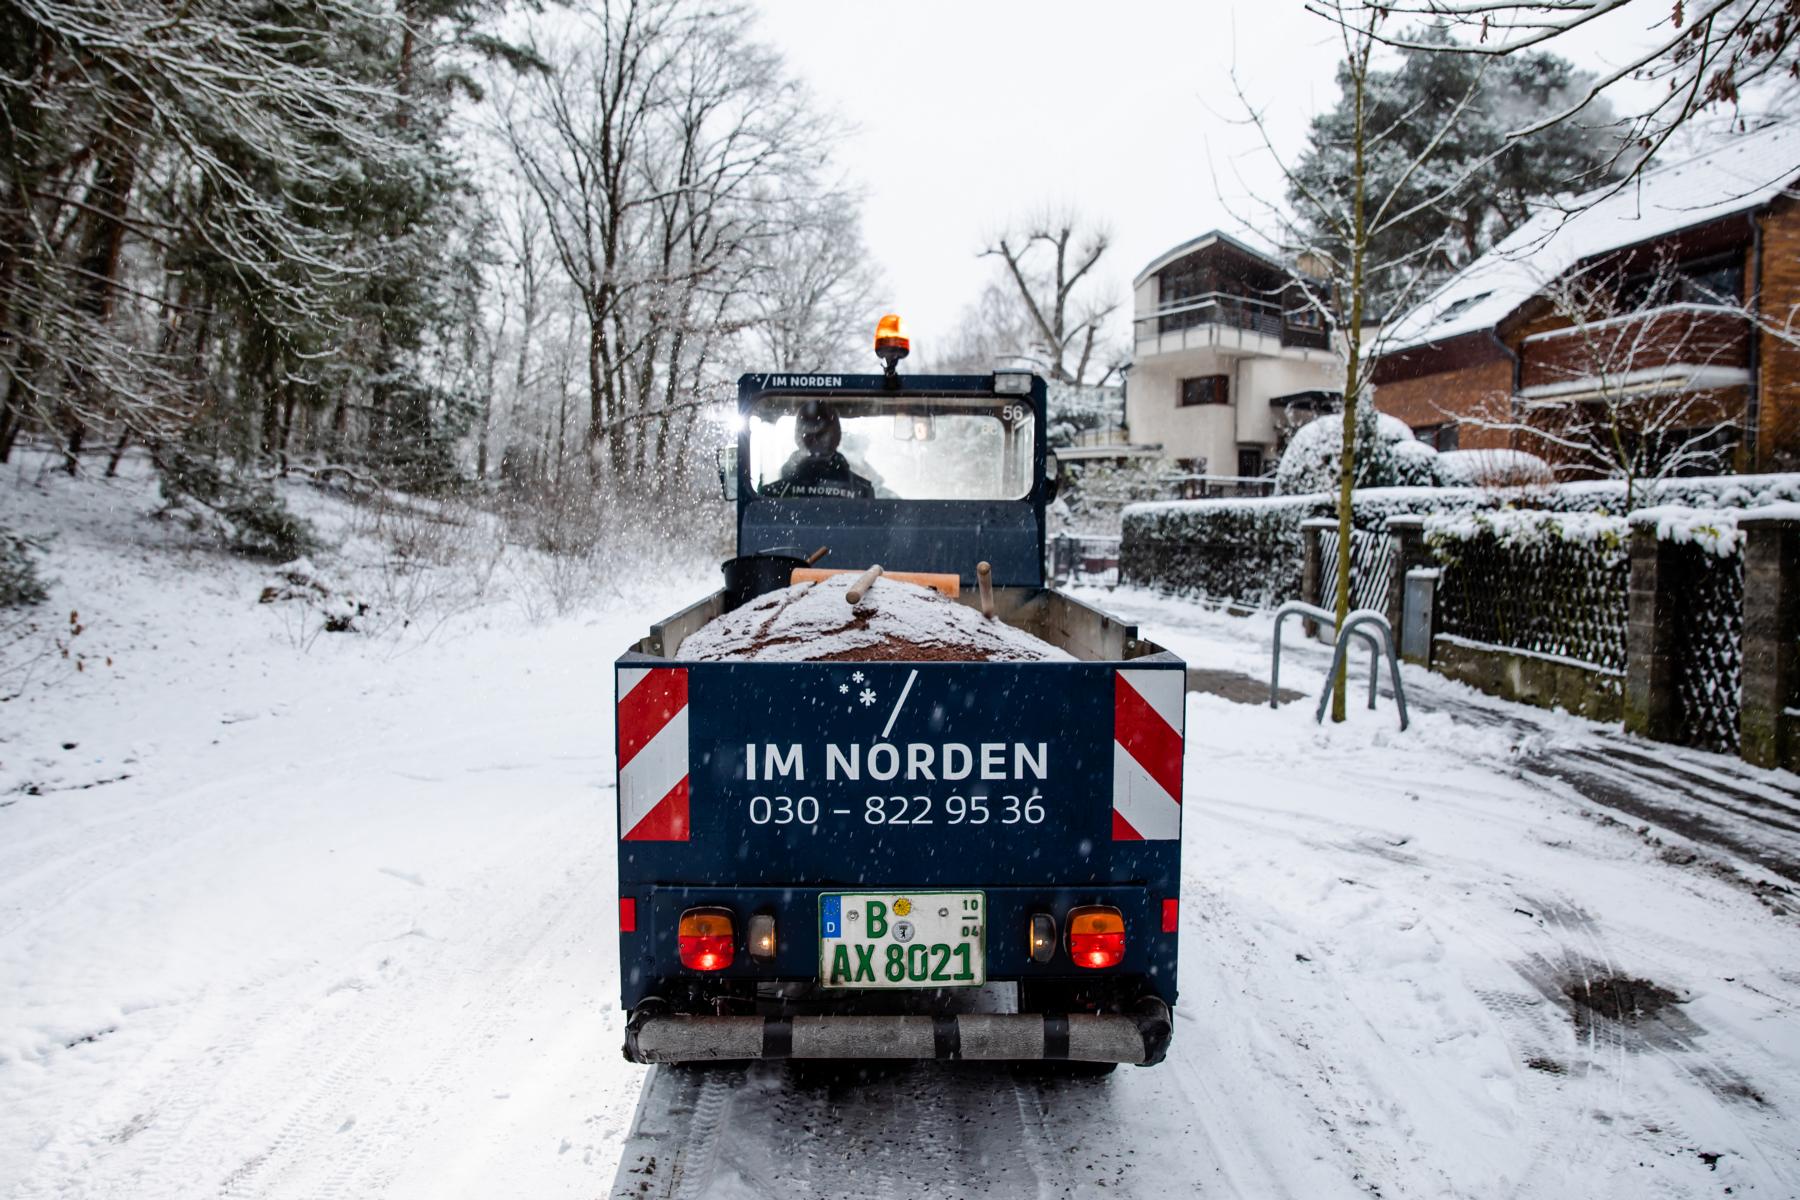 Winterdienst IM NORDEN GmbH